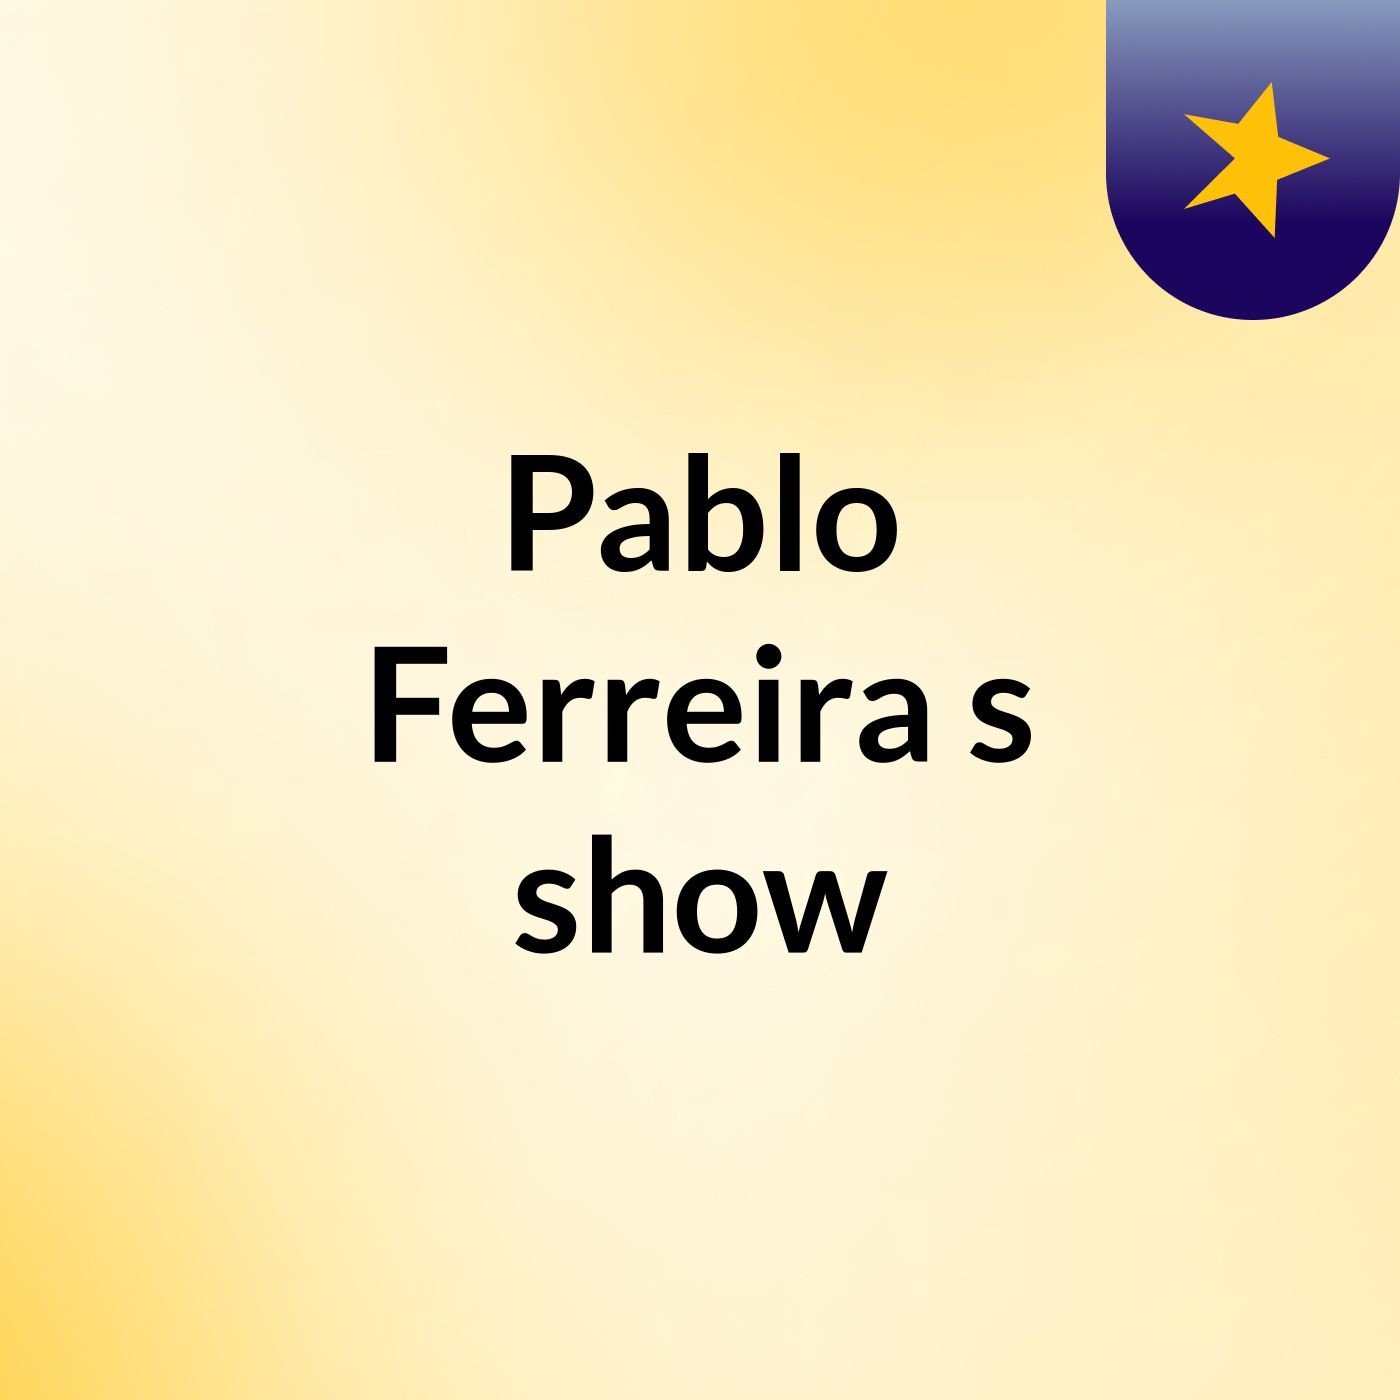 Pablo Ferreira's show